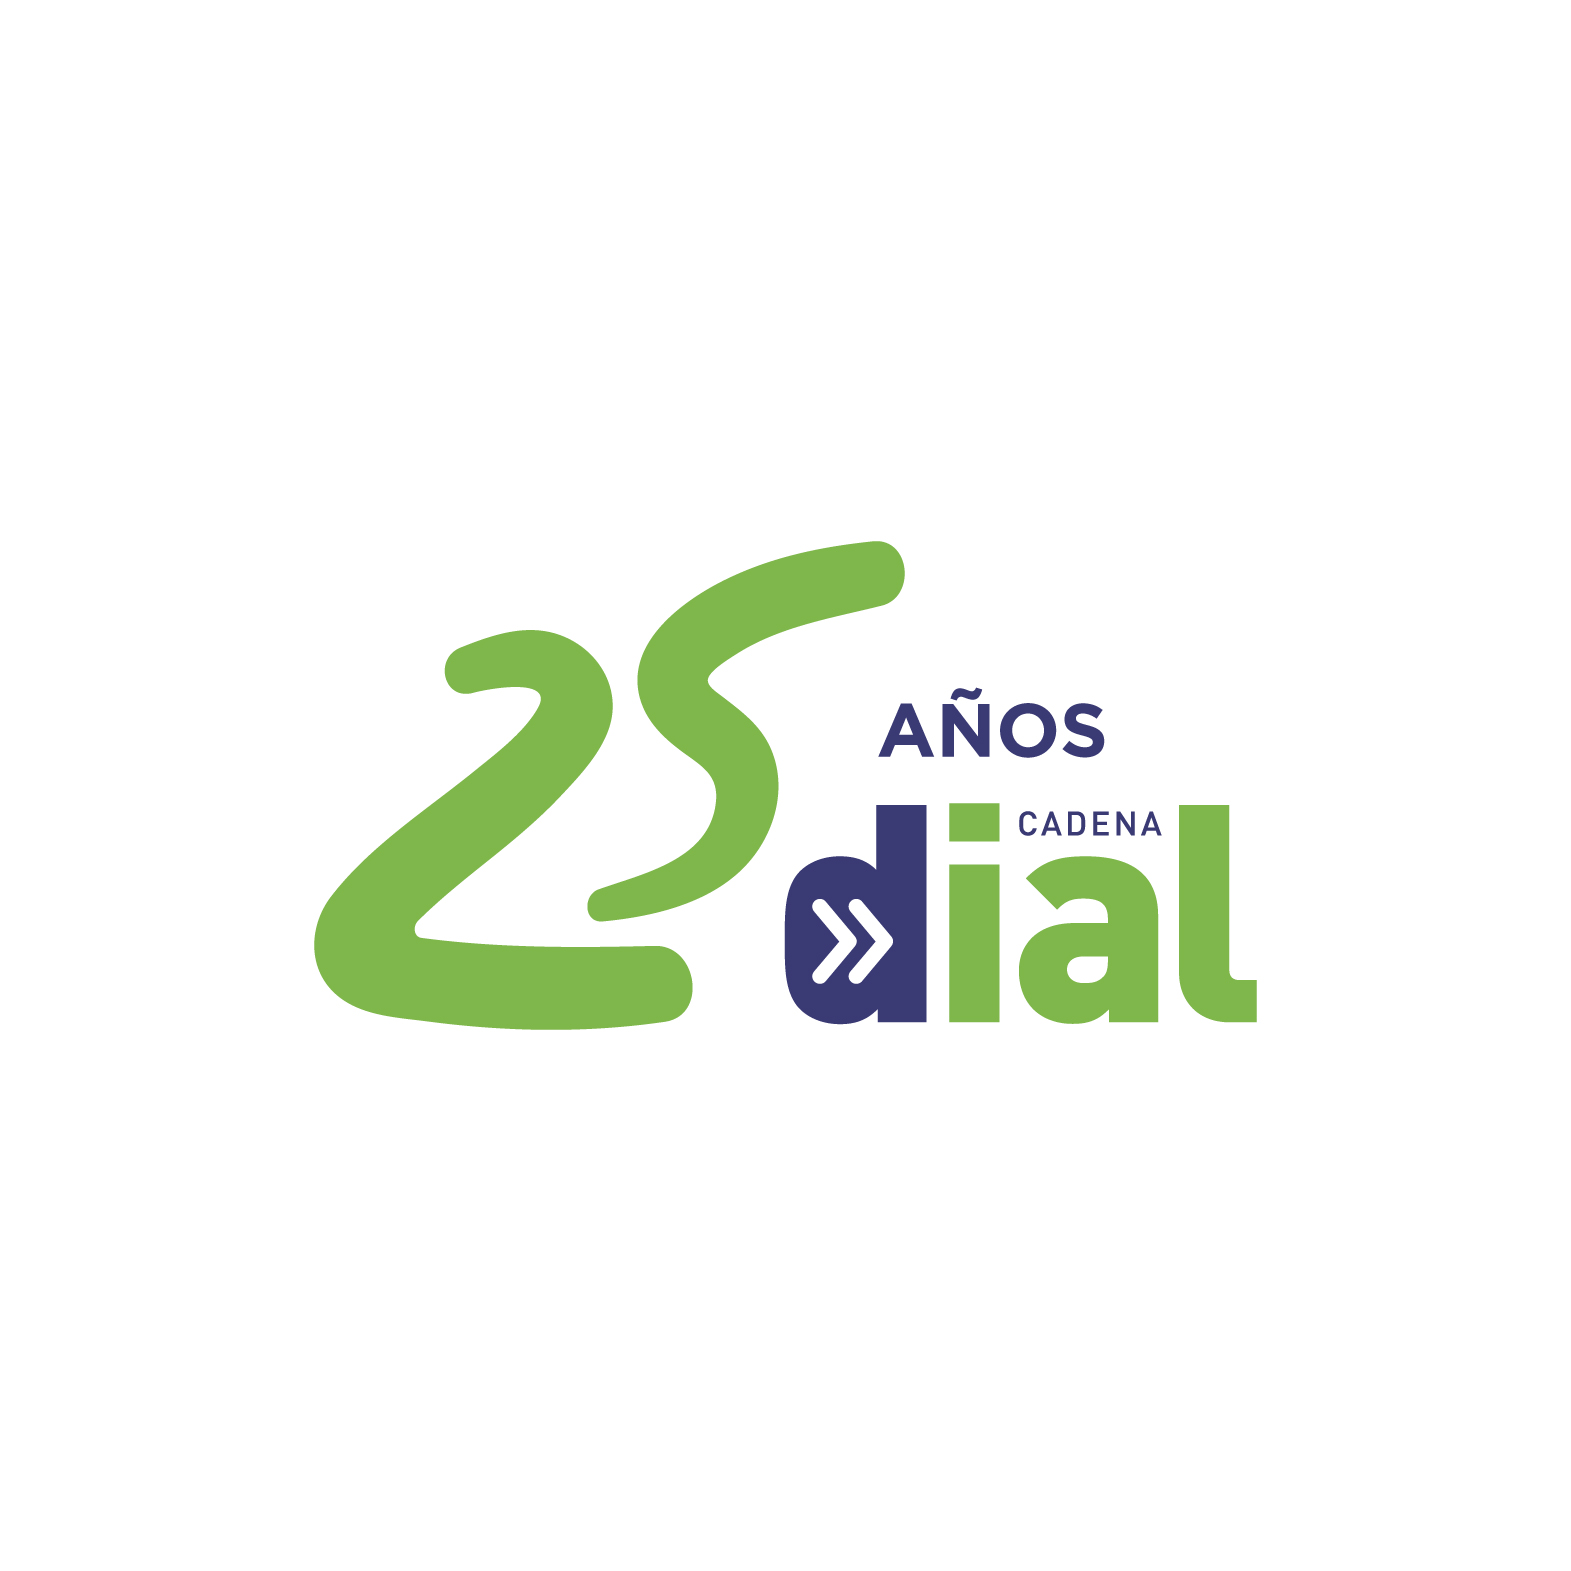 Logo25AñosOK-03